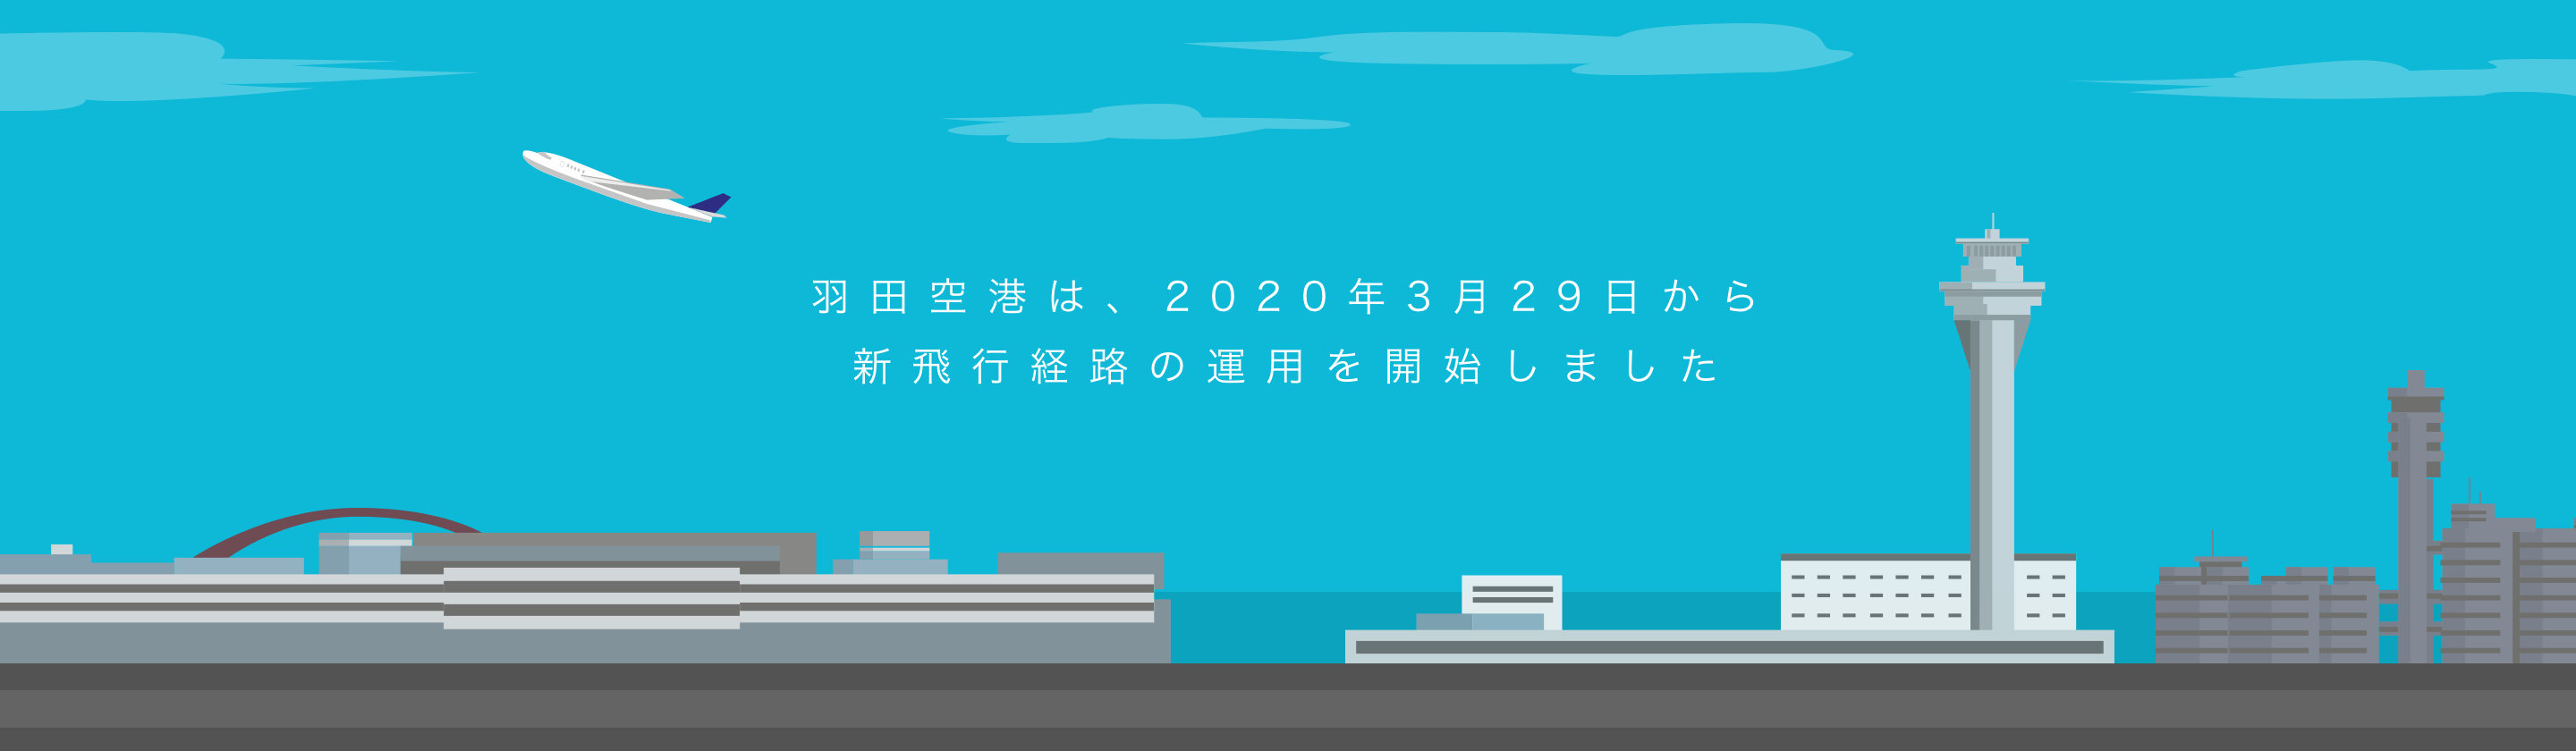 羽田空港は、2020年3月29日から新飛行経路の運用を開始しました